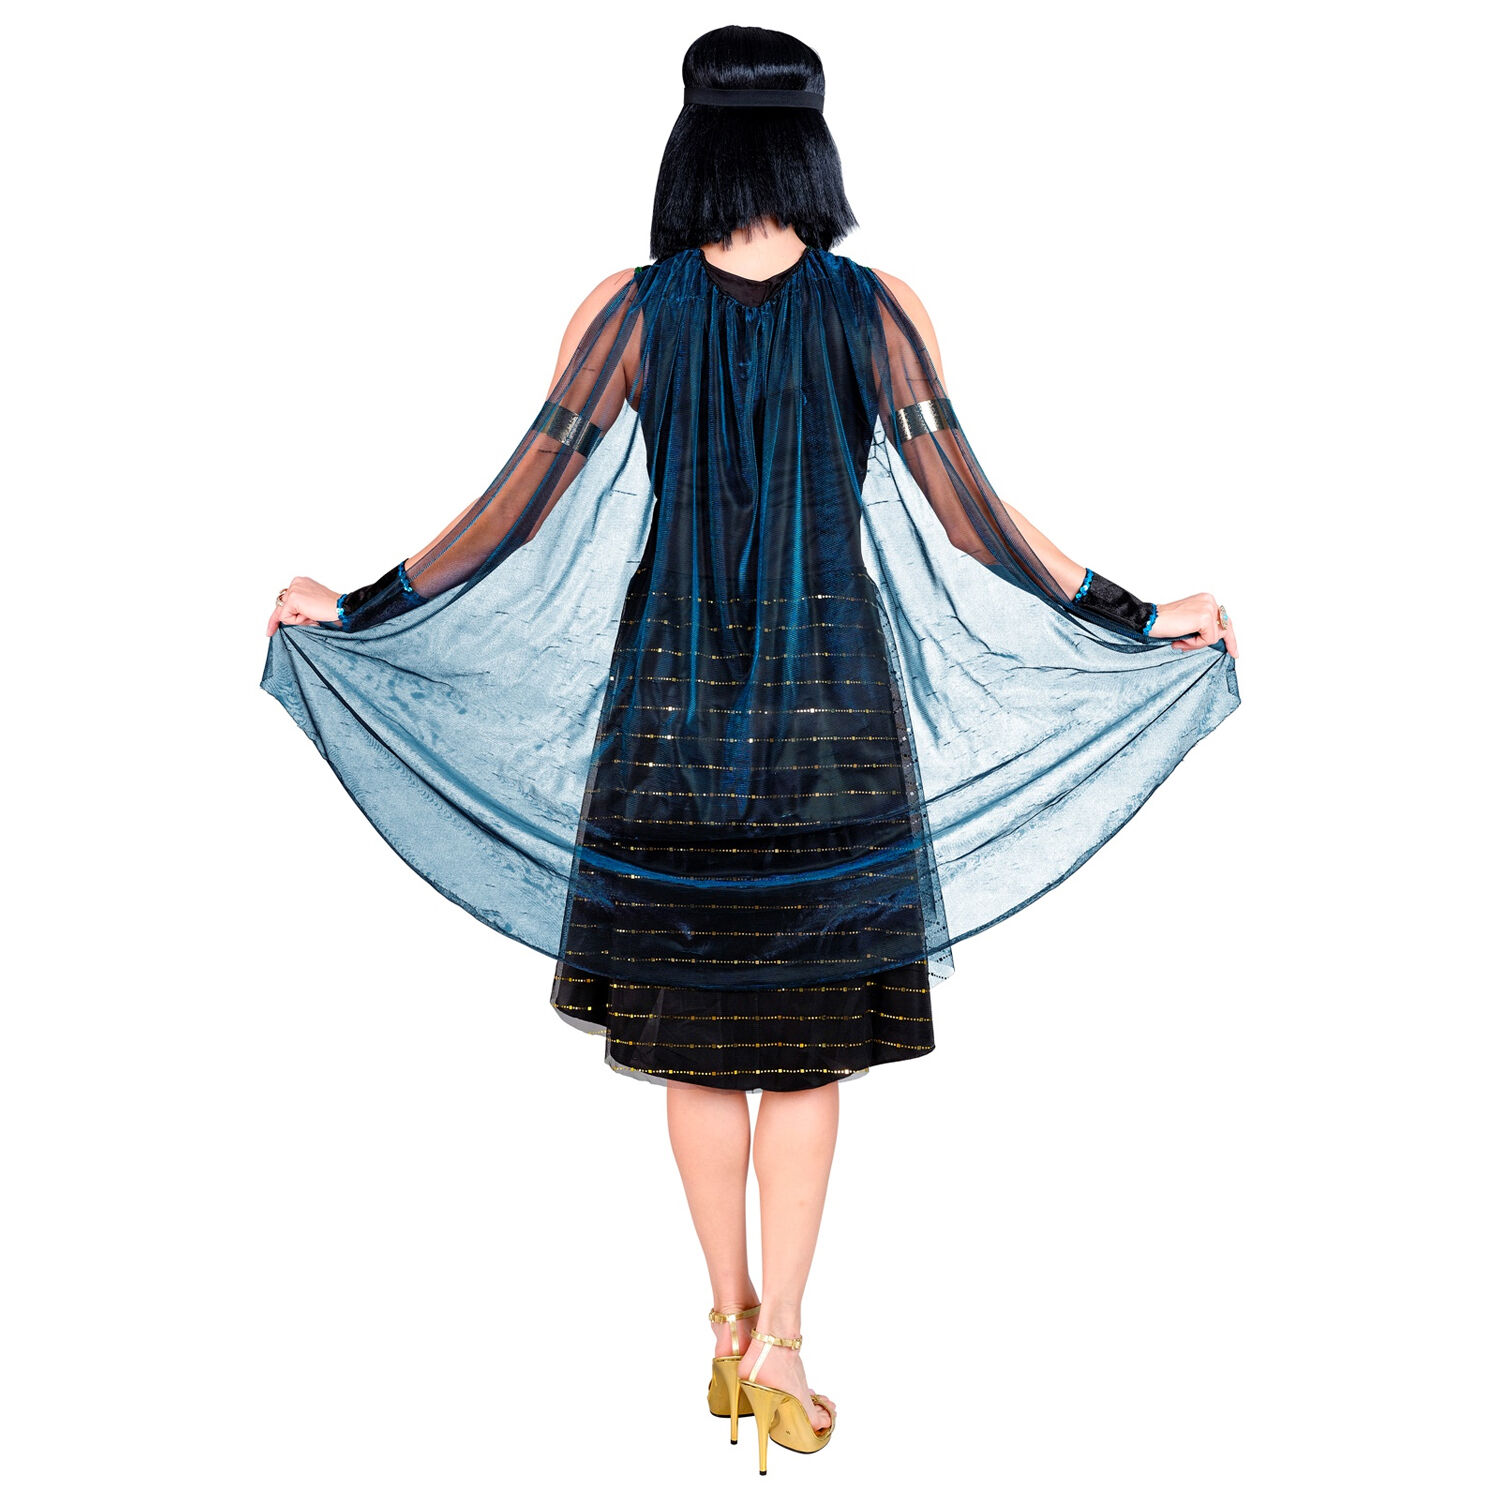 NEU Damen-Kostm gypterin / Cleopatra, Kleid mit Umhang, Armstulpen und Stirnband, schwarz, Gr. XS Bild 2